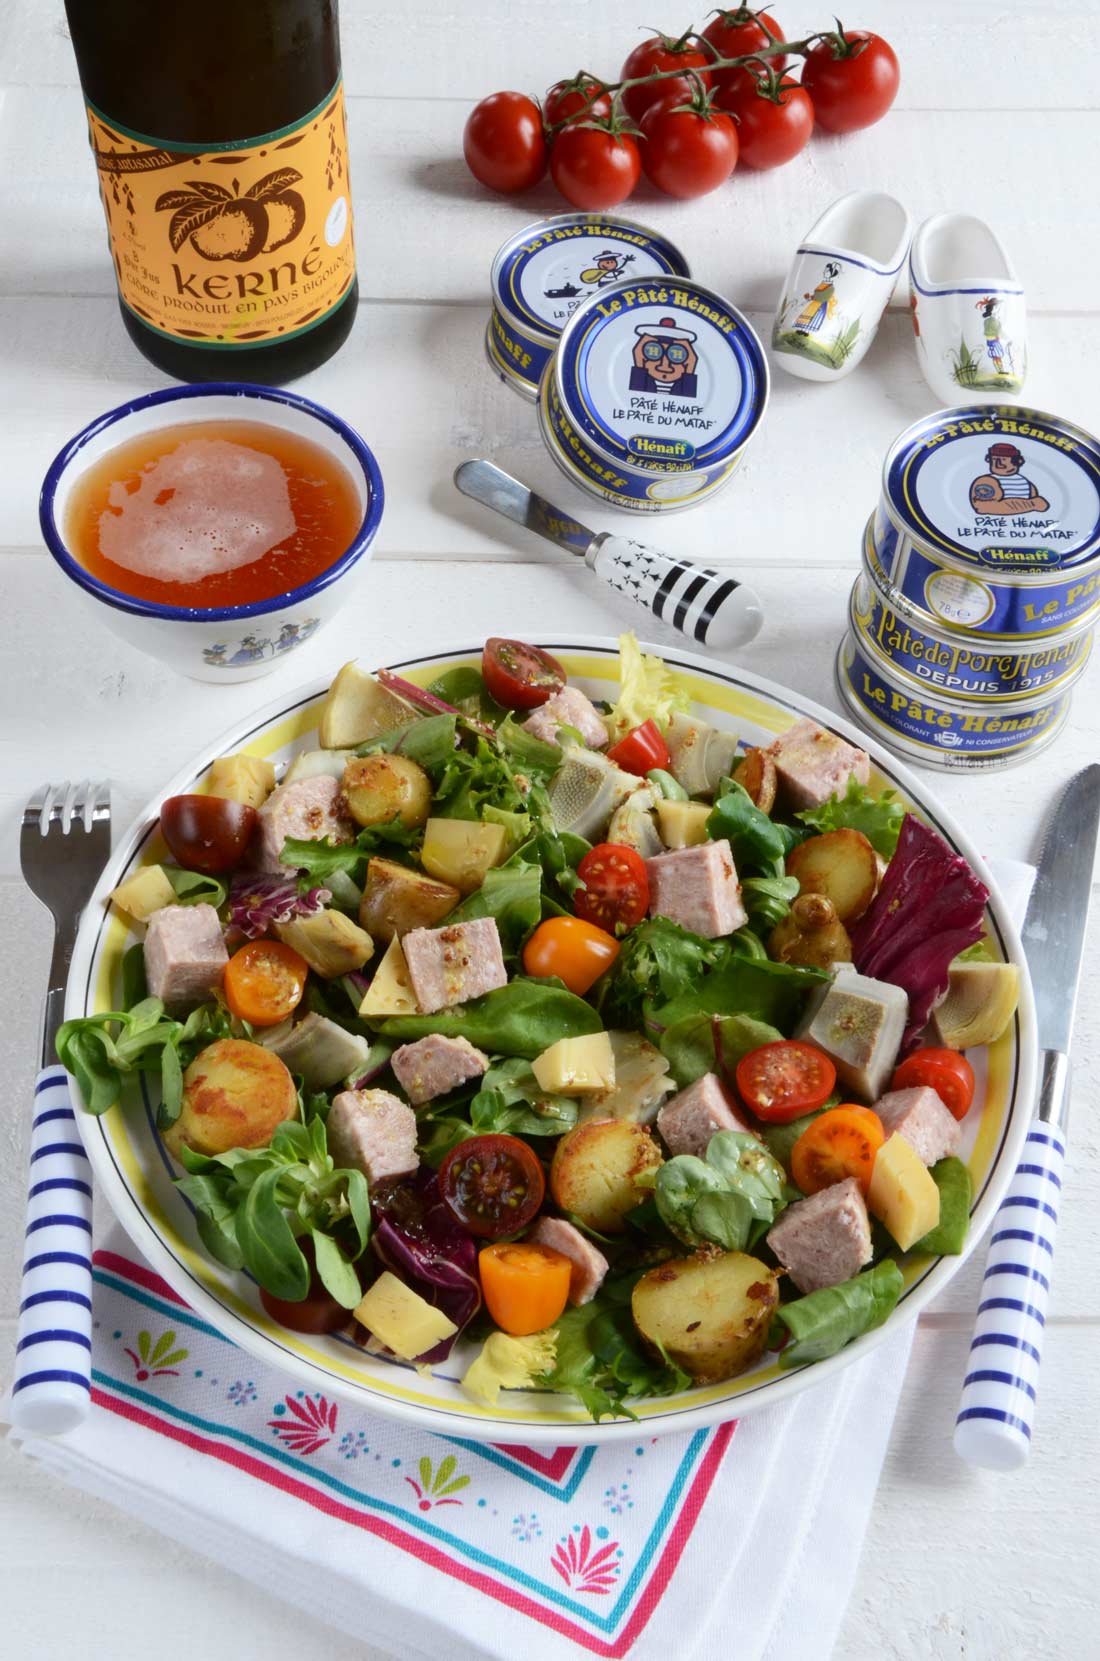 Salade bretonne au Paté Hénaff